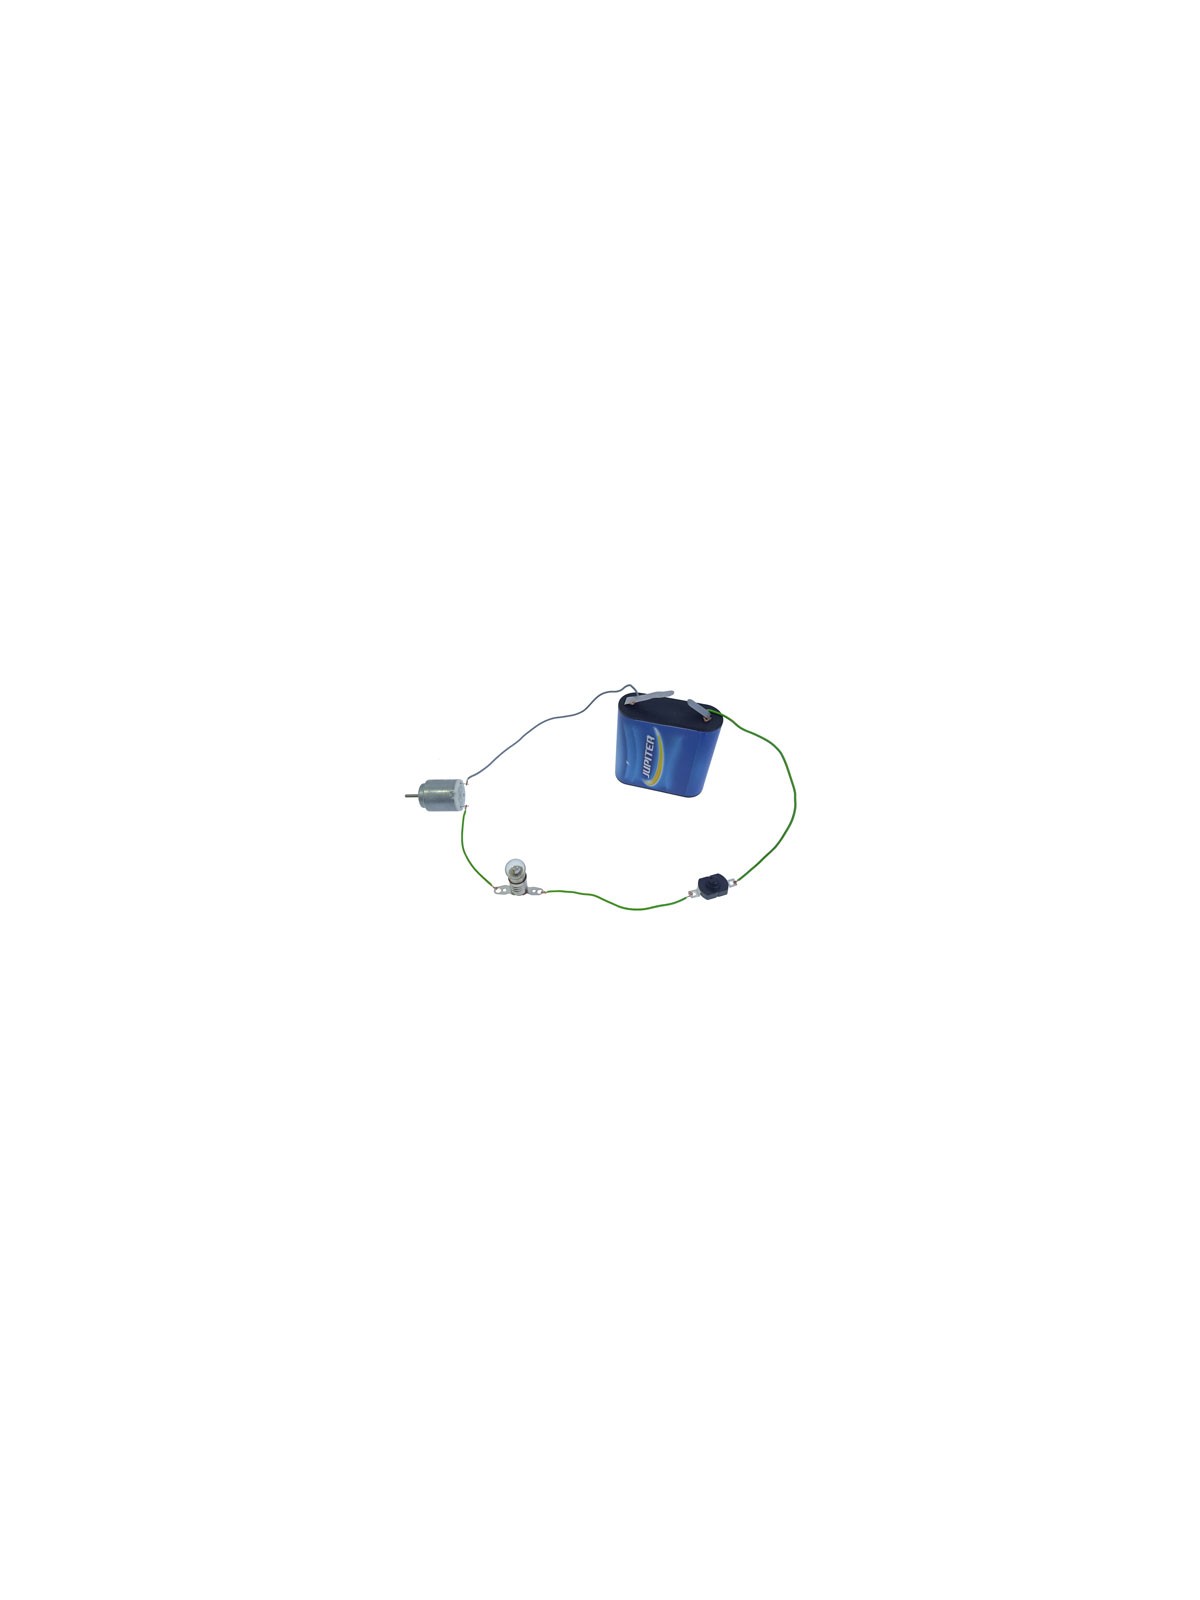 Kit circuito básico de electricidad - Microlog